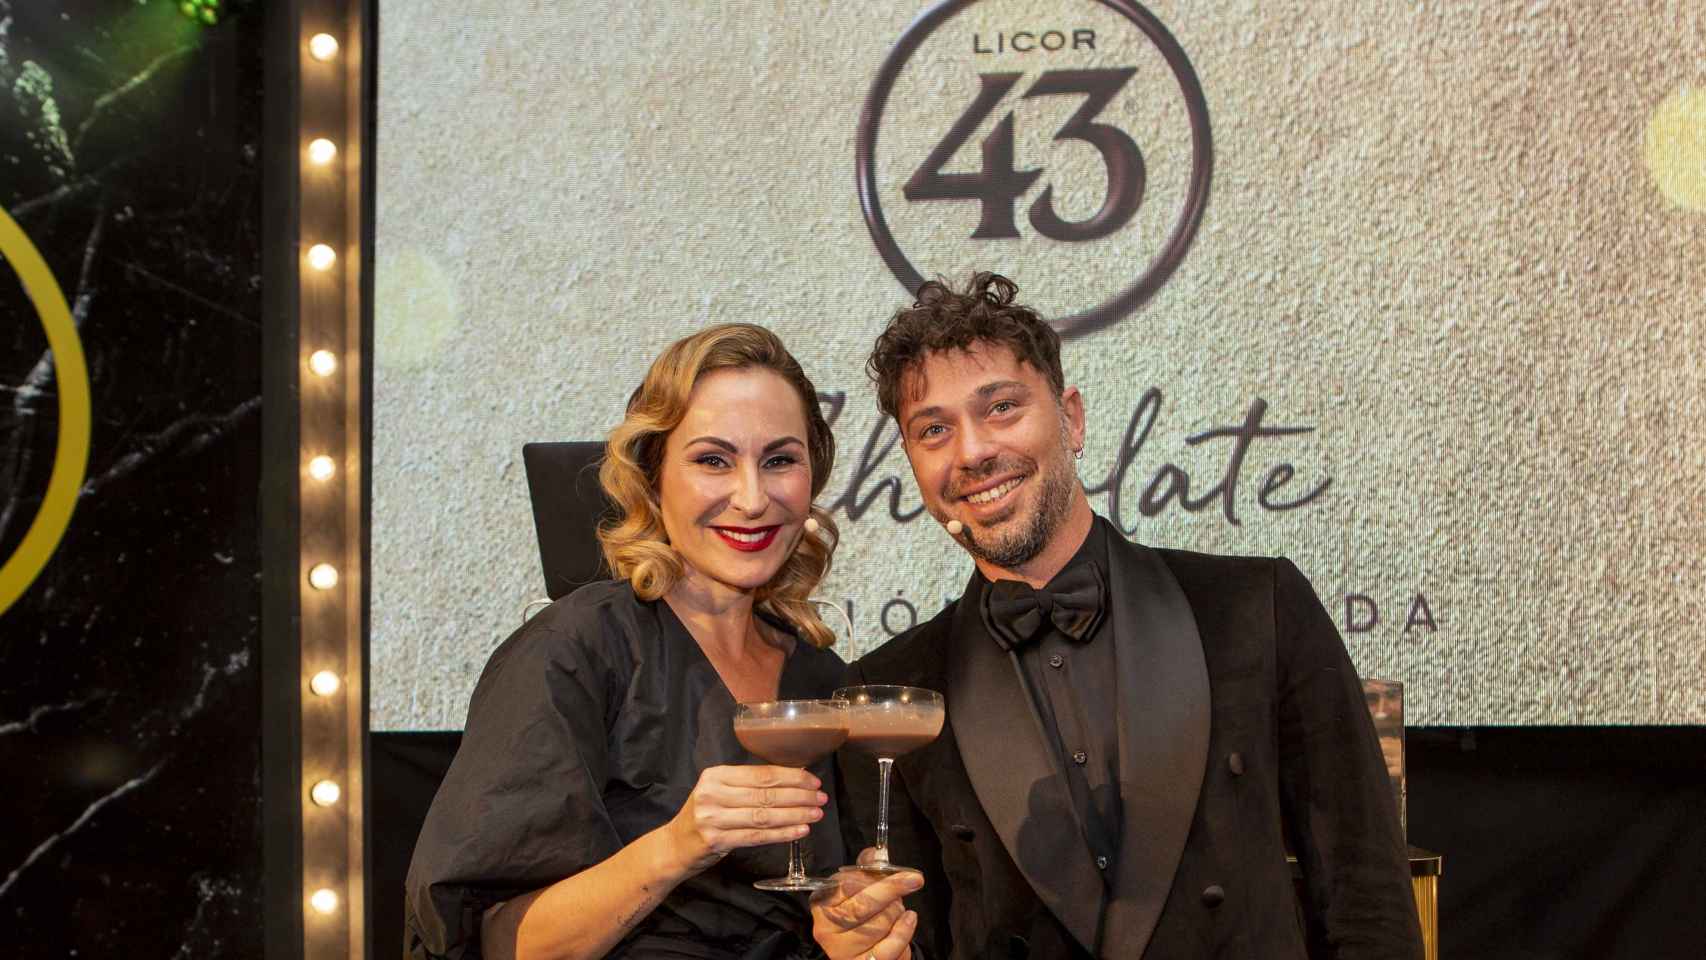 Ana Milán y Luca Bonsignori fueron los presentadores de la gala del 75 Aniversario de Licor 43.